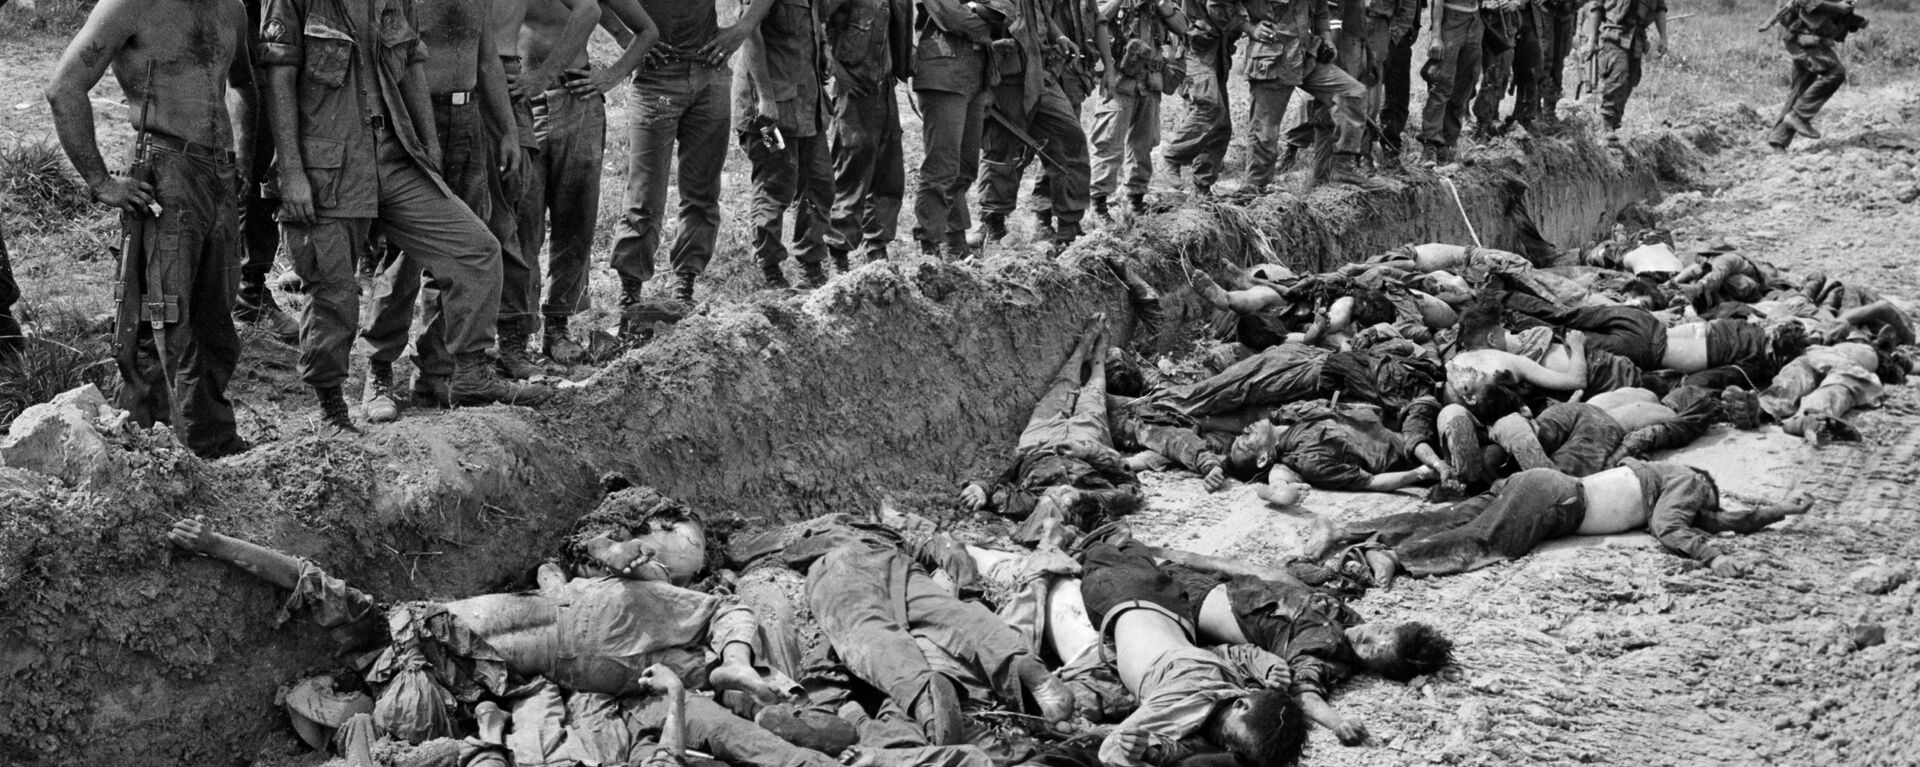 Lính Mỹ nhìn đám thi thể những người Việt bị họ giết chết. Chiến tranh Việt Nam, năm 1967 - Sputnik Việt Nam, 1920, 30.07.2019